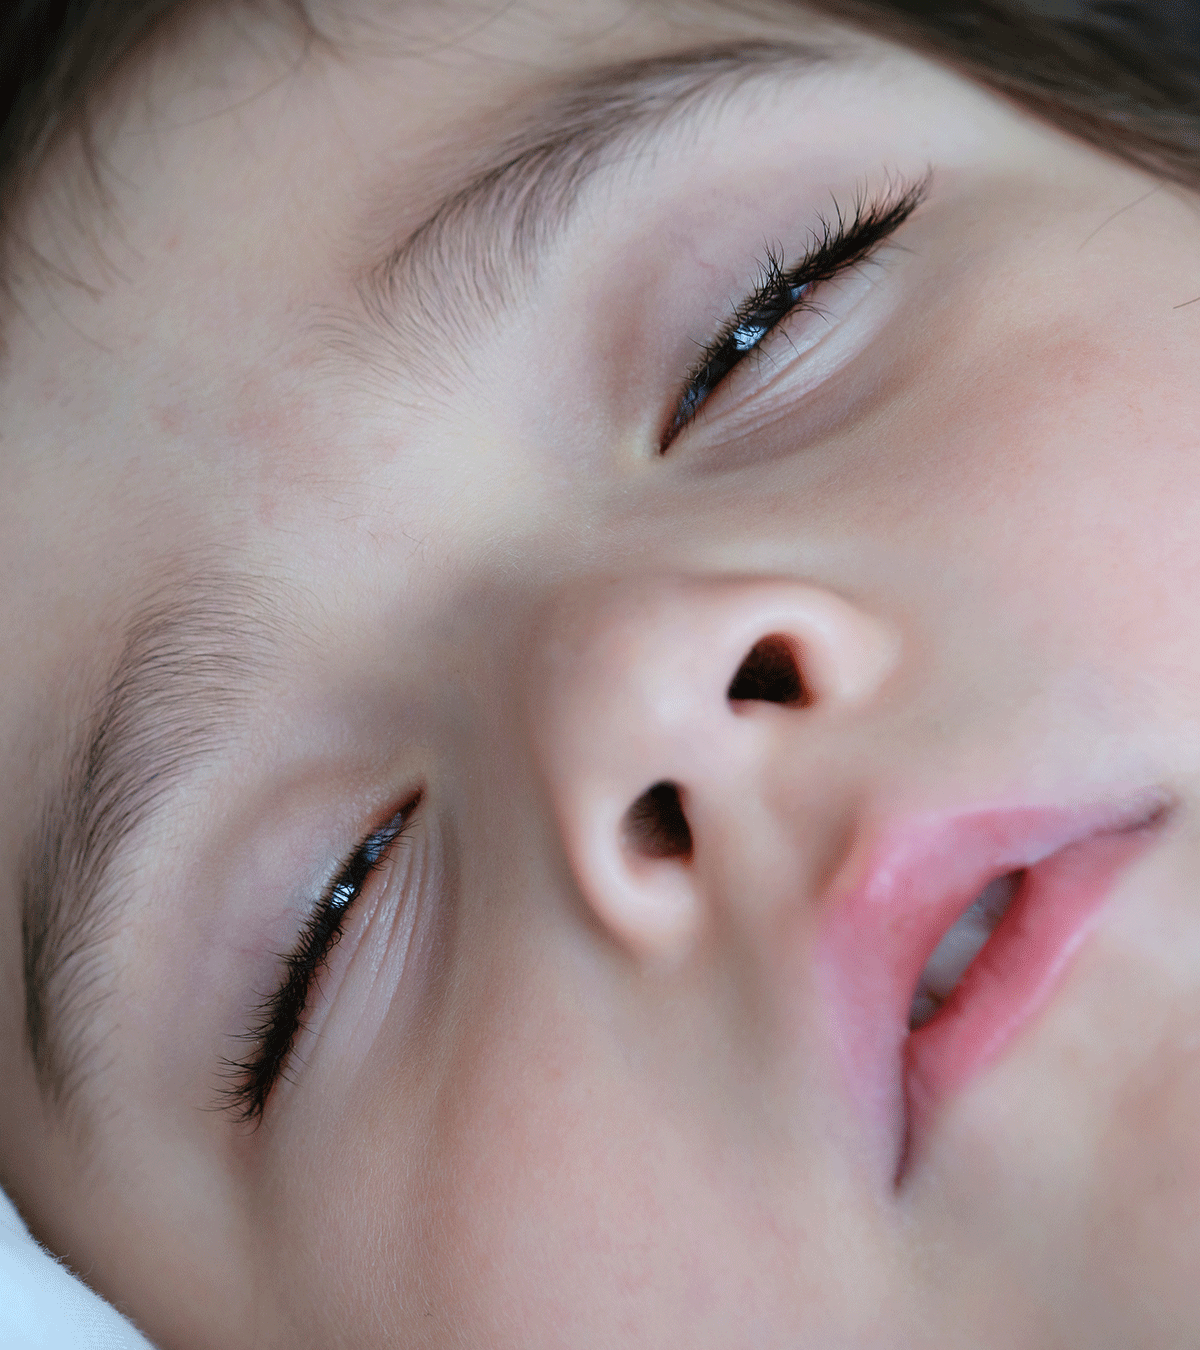 बच्चे आंखें खोलकर क्यों सोते हैं? | Baby Sleeping With Eyes Open In Hindi